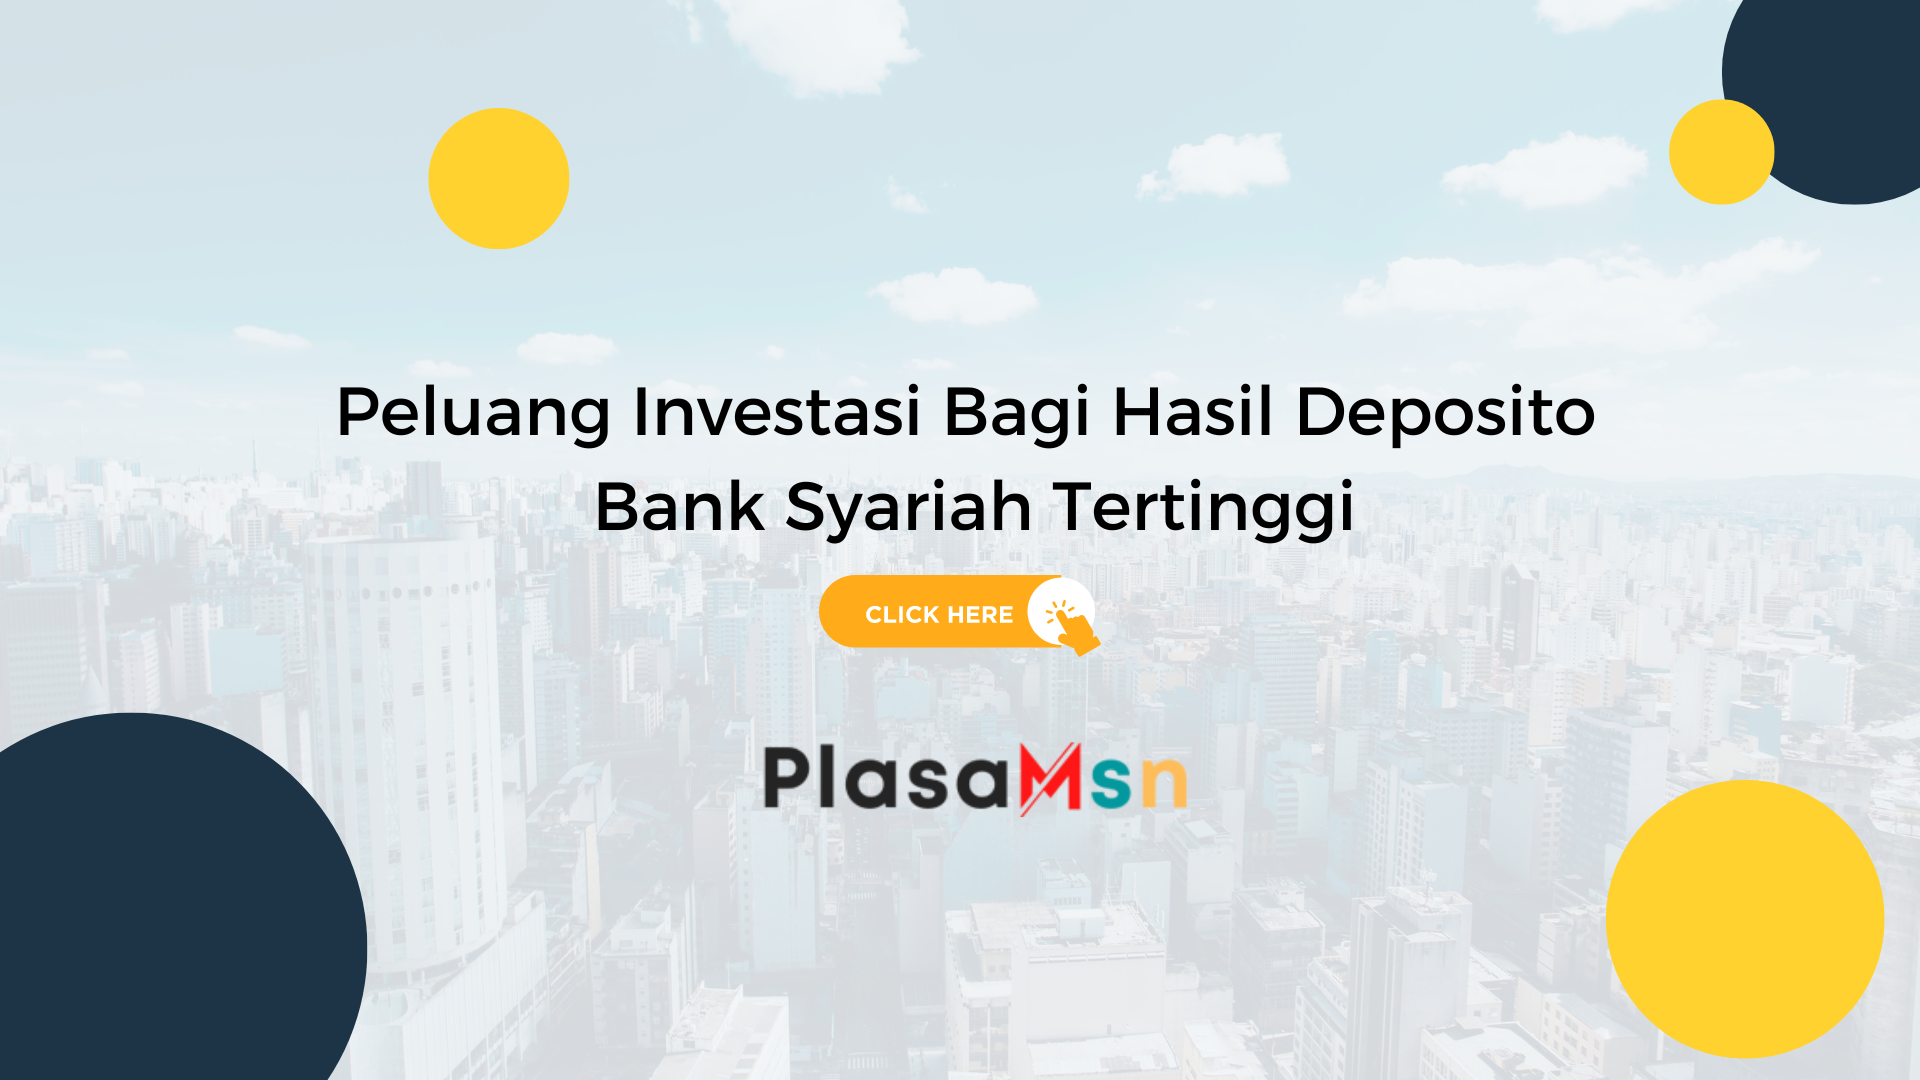 Peluang-Investasi-Bagi-Hasil-Deposito-Bank-Syariah-Tertinggi